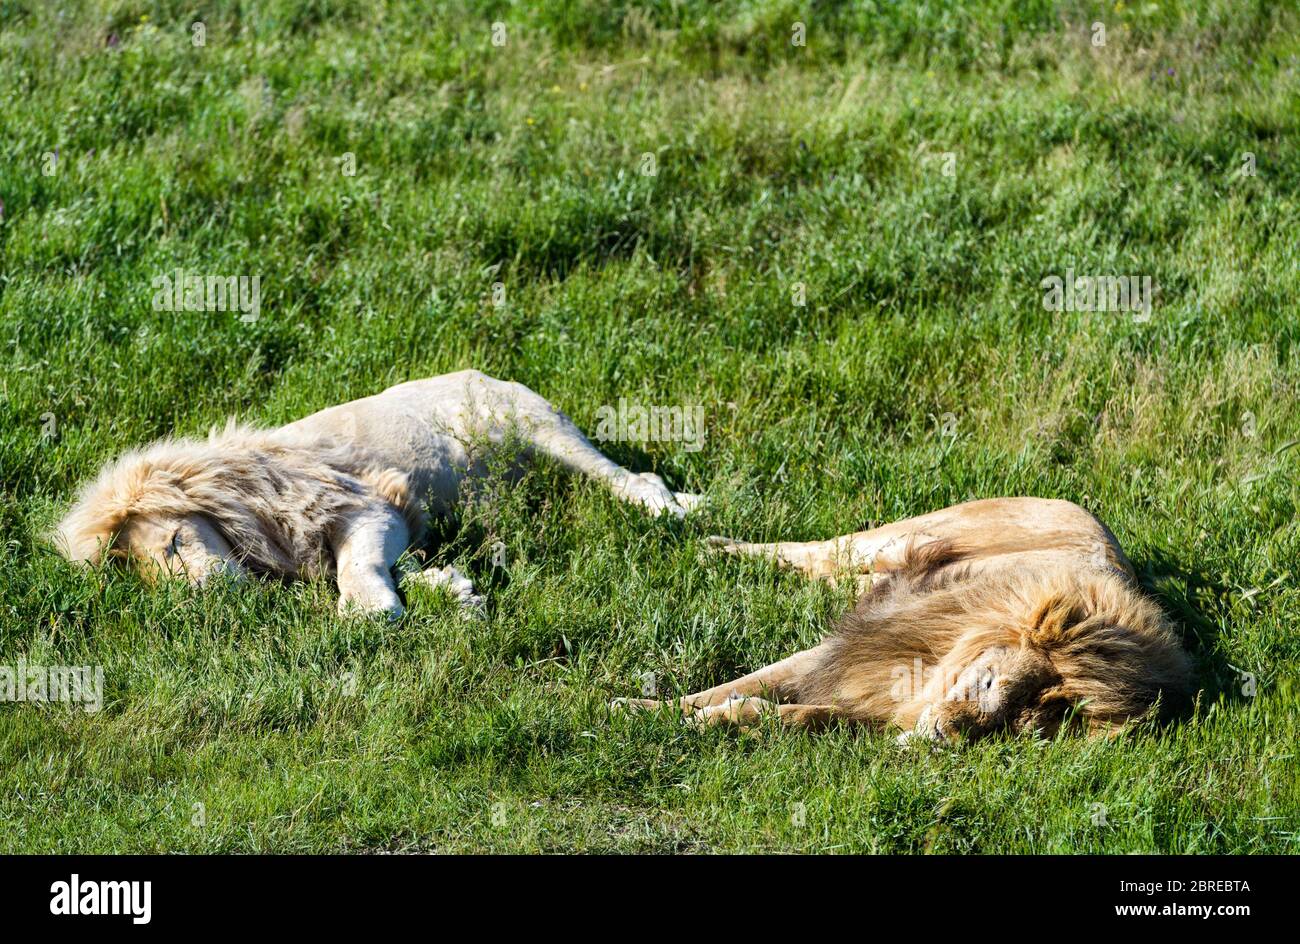 Deux lions, ordinaires et blancs, se trouvant sur l'herbe dans le parc safari Banque D'Images